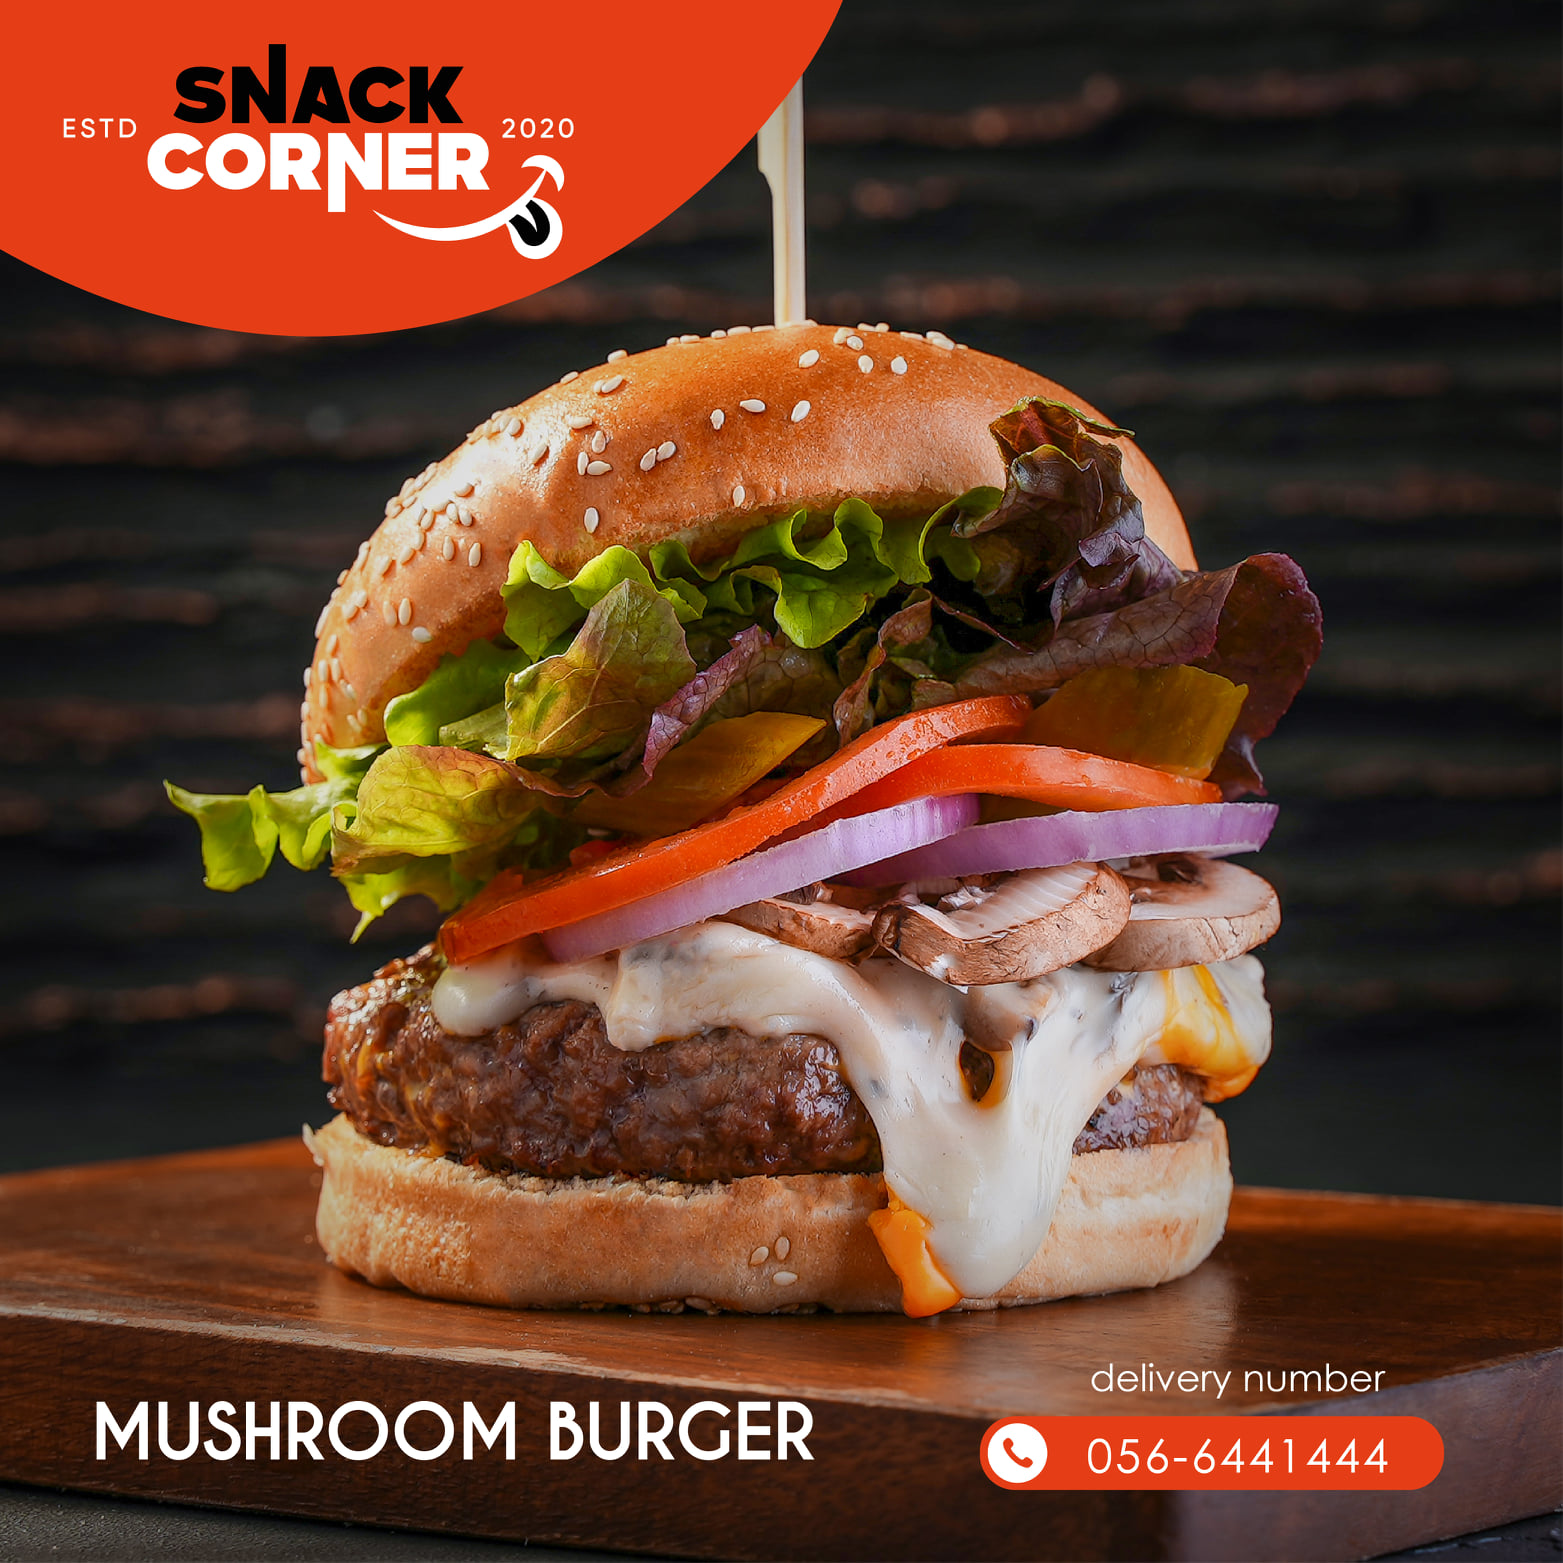 Mushroom burger with sauce - grilled mushroom burger